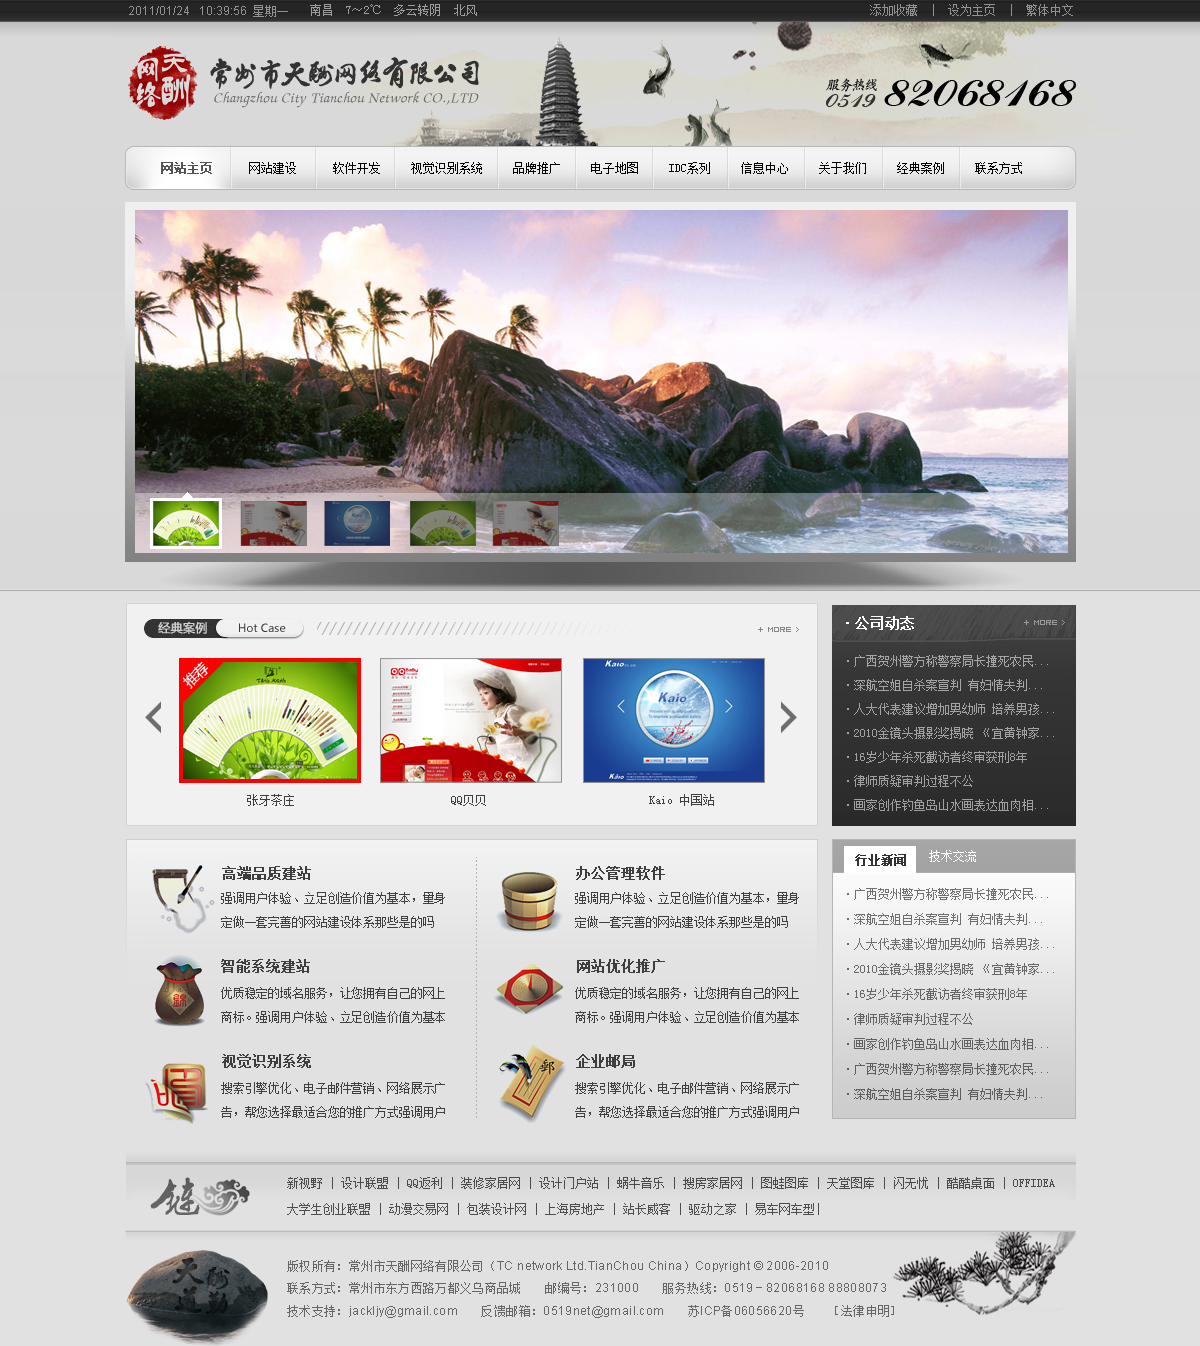 原创中国风网络公司企业网站设计PSD网站模板素材源码